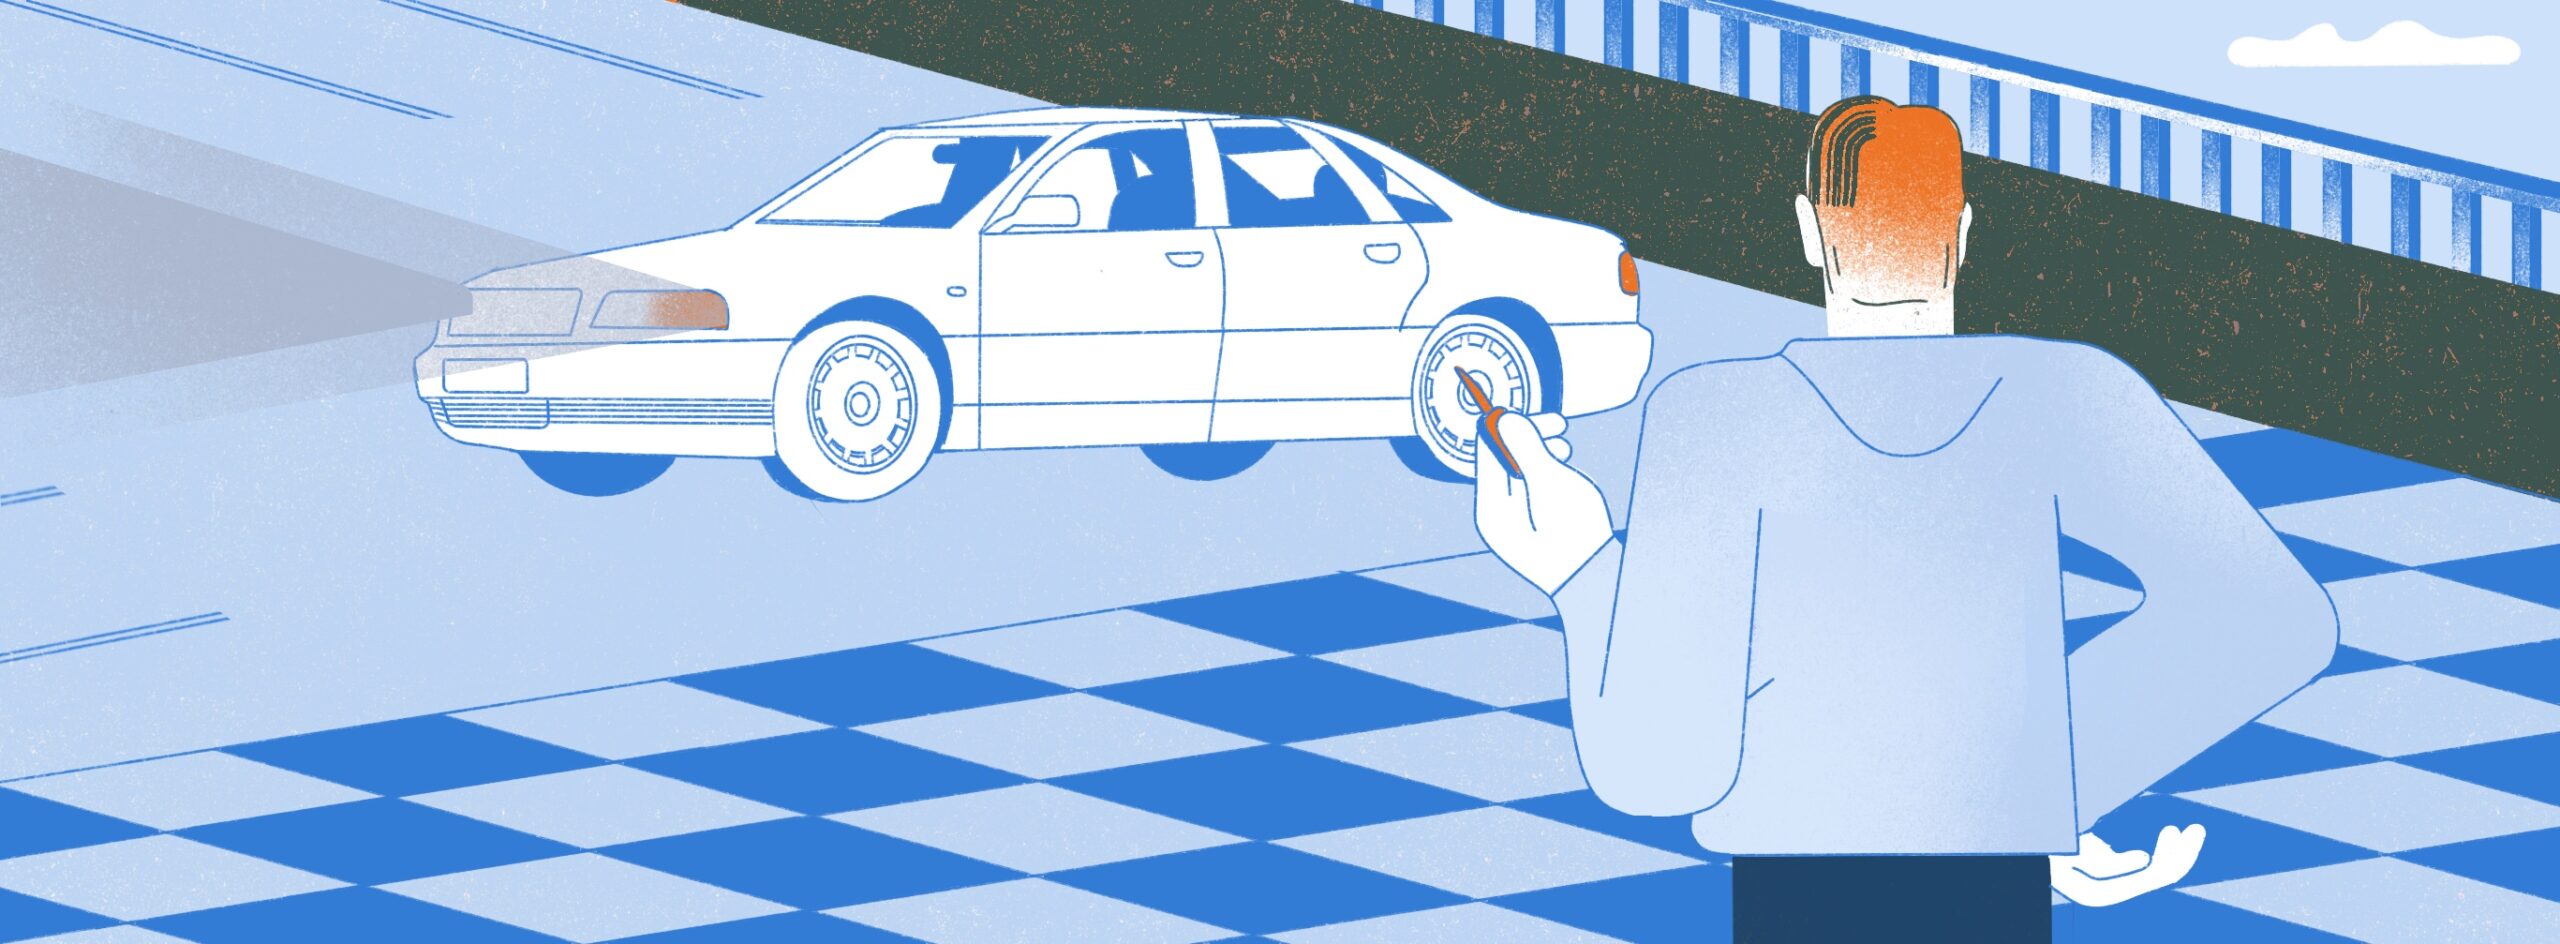 Полноразмерная обложка поста на тему: Как я владел старым премиальным автомобилем